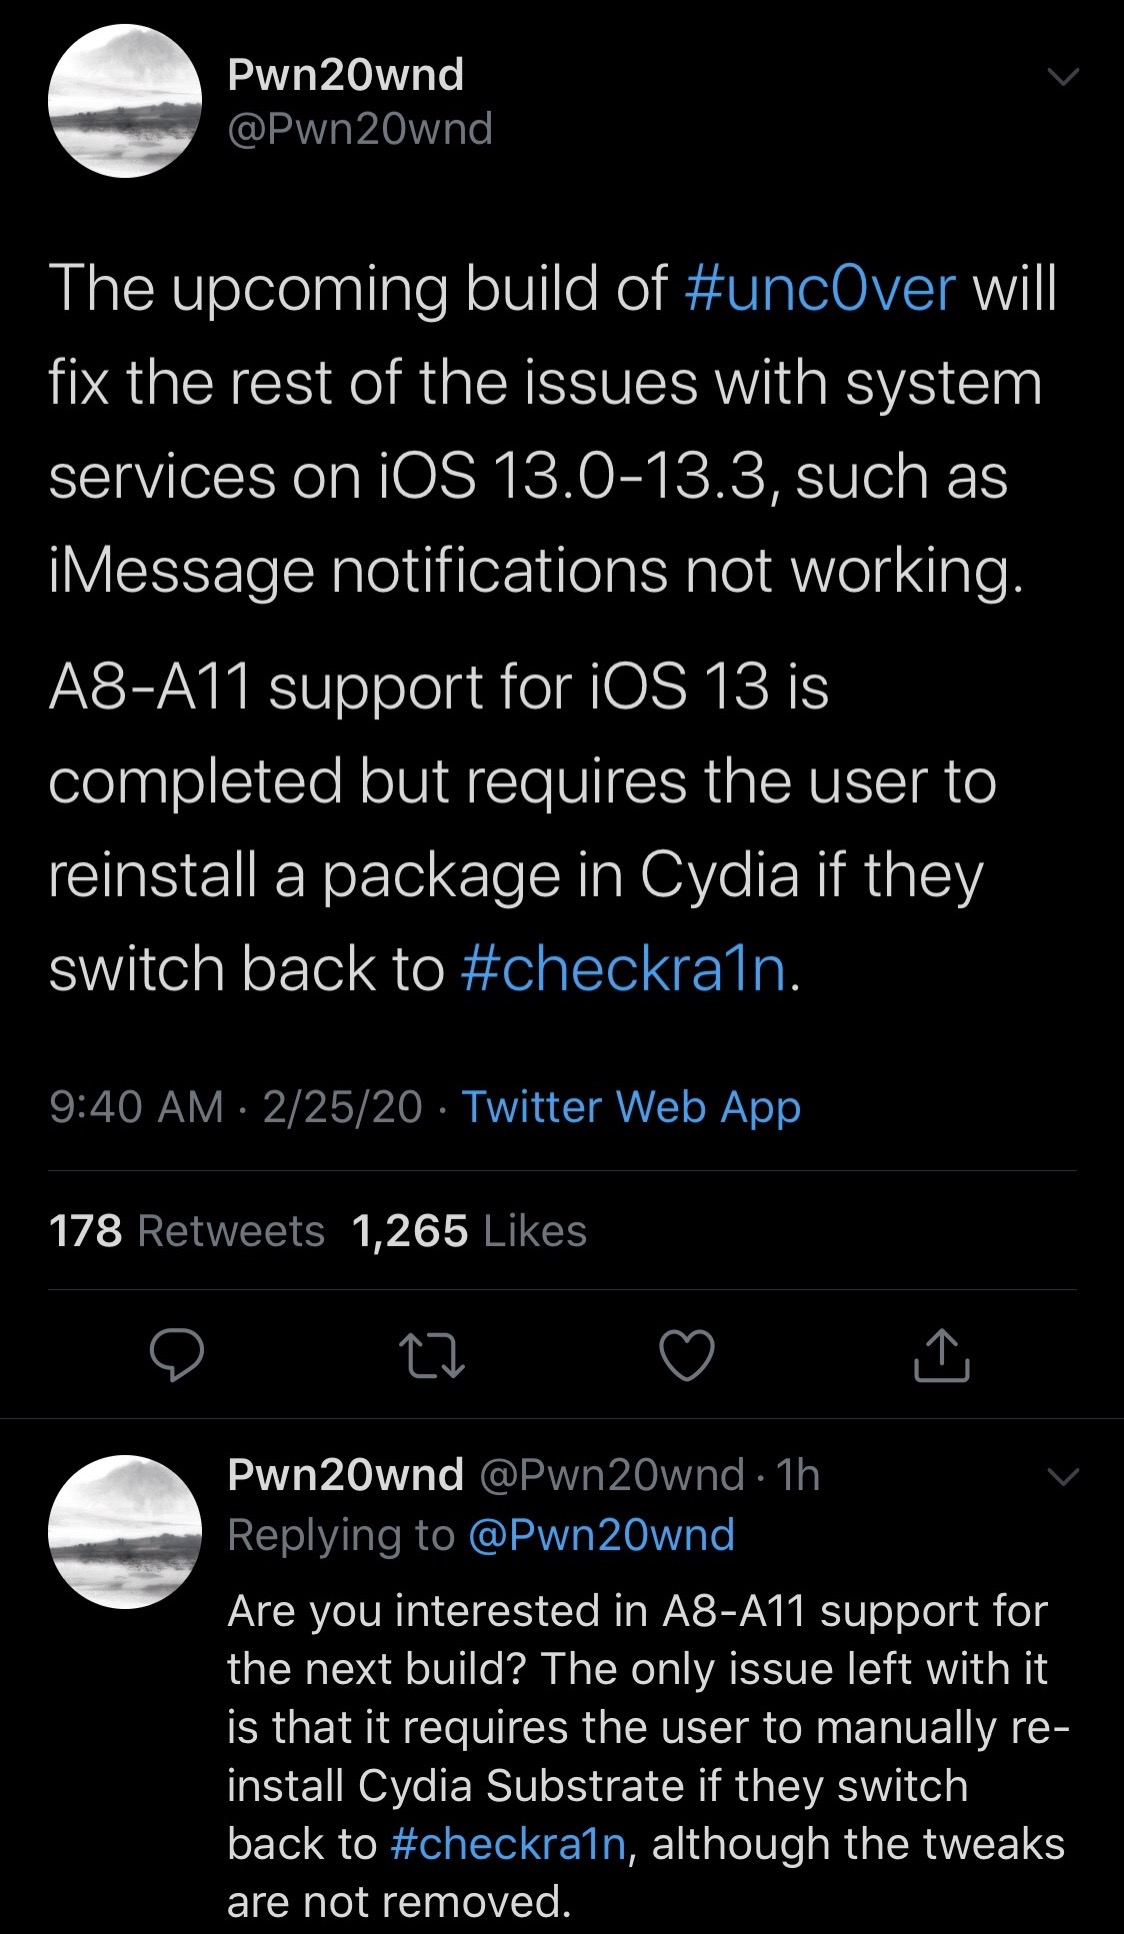 Nästa uppdatering upptäckt att stödja iOS 13.0-13.3 på A8-A11 3 . enheter